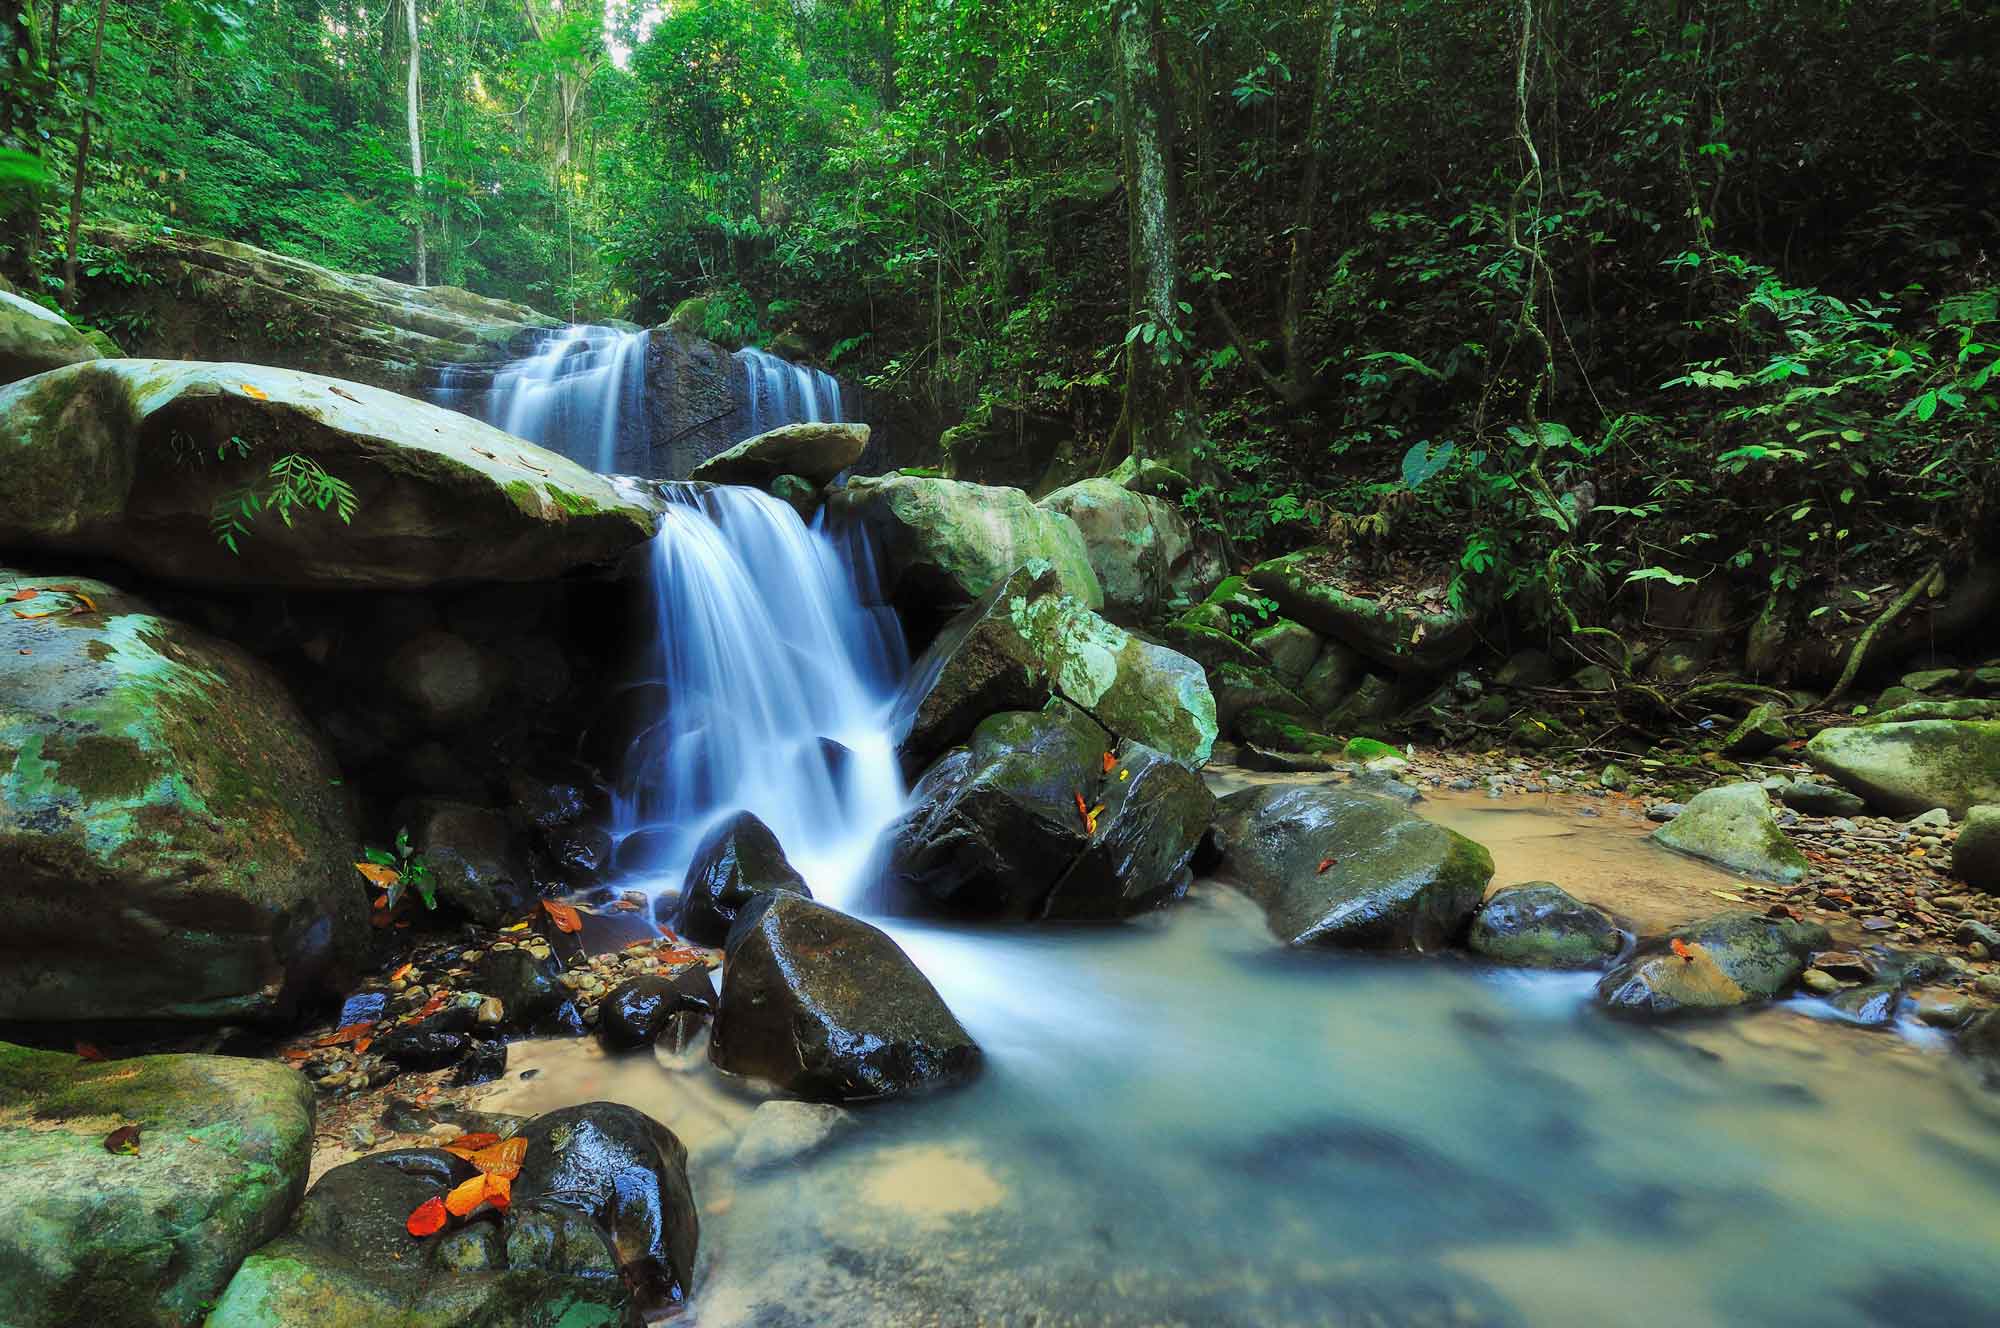 Places To Visit in Malaysia - Kota Kinabalu